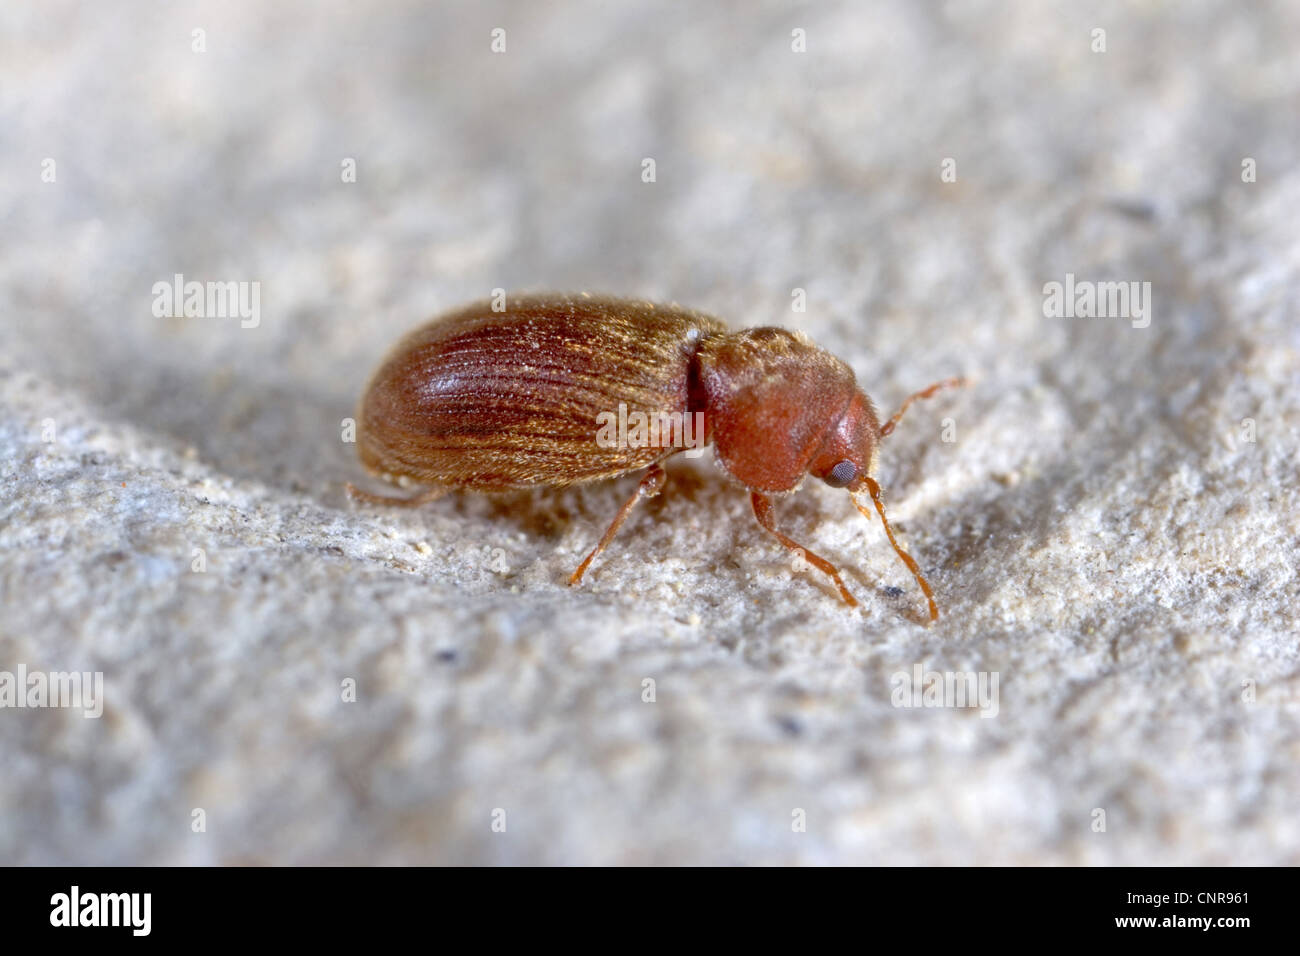 drugstore beetle, drug store weevil, biscuit beetle, bread beetle (Stegobium paniceum), on a wall, Germany, Baden-Wuerttemberg Stock Photo